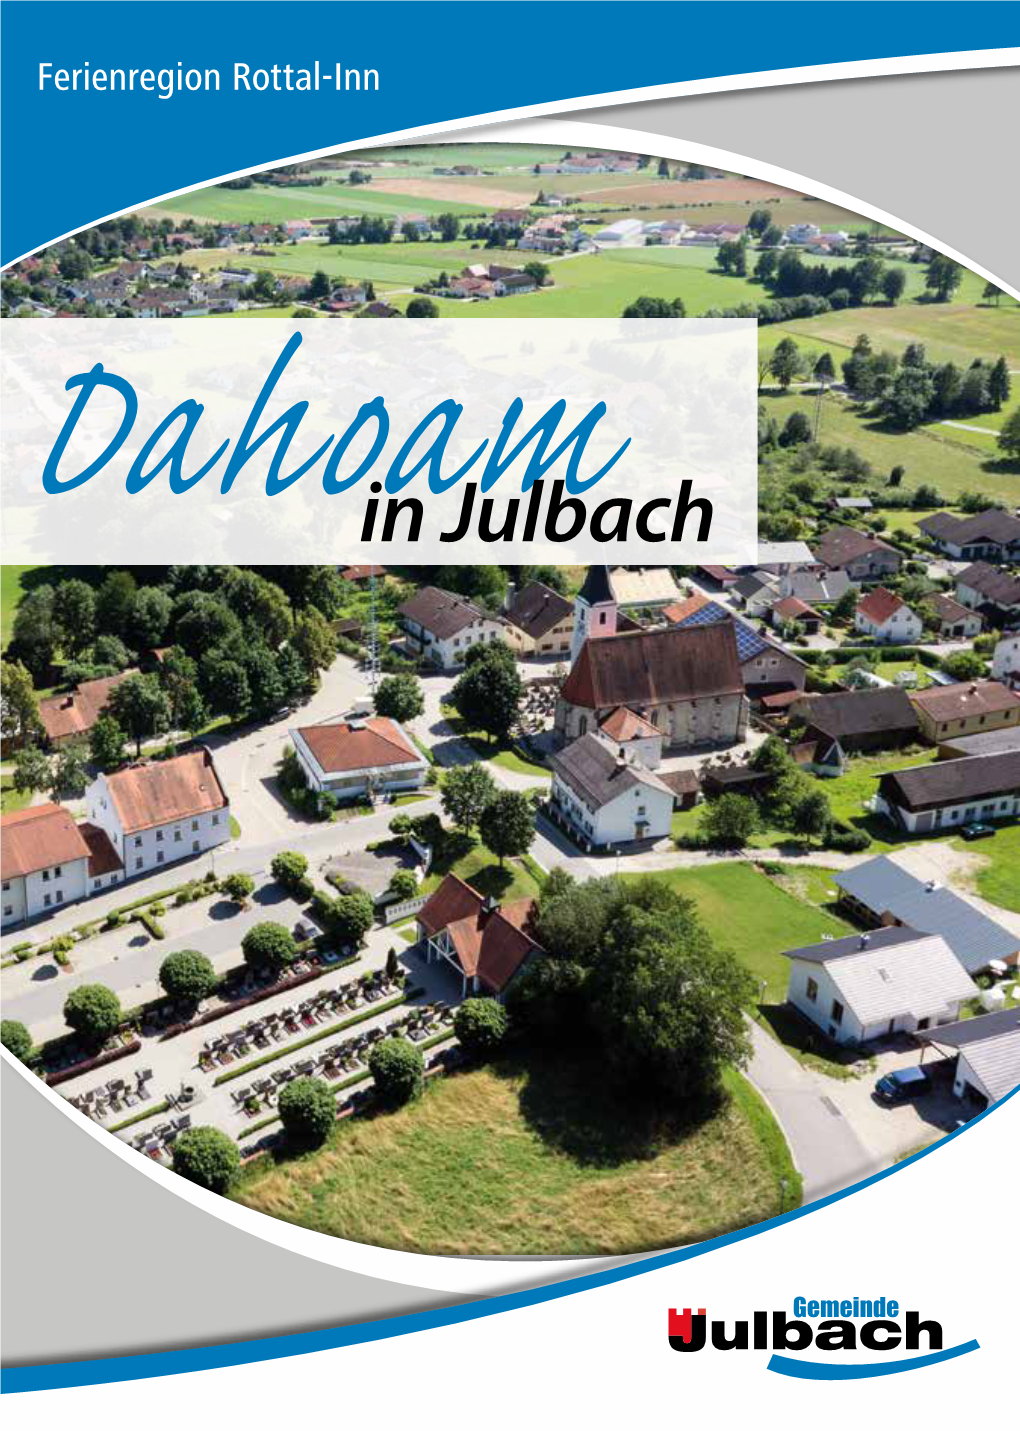 Dahoamin Julbach